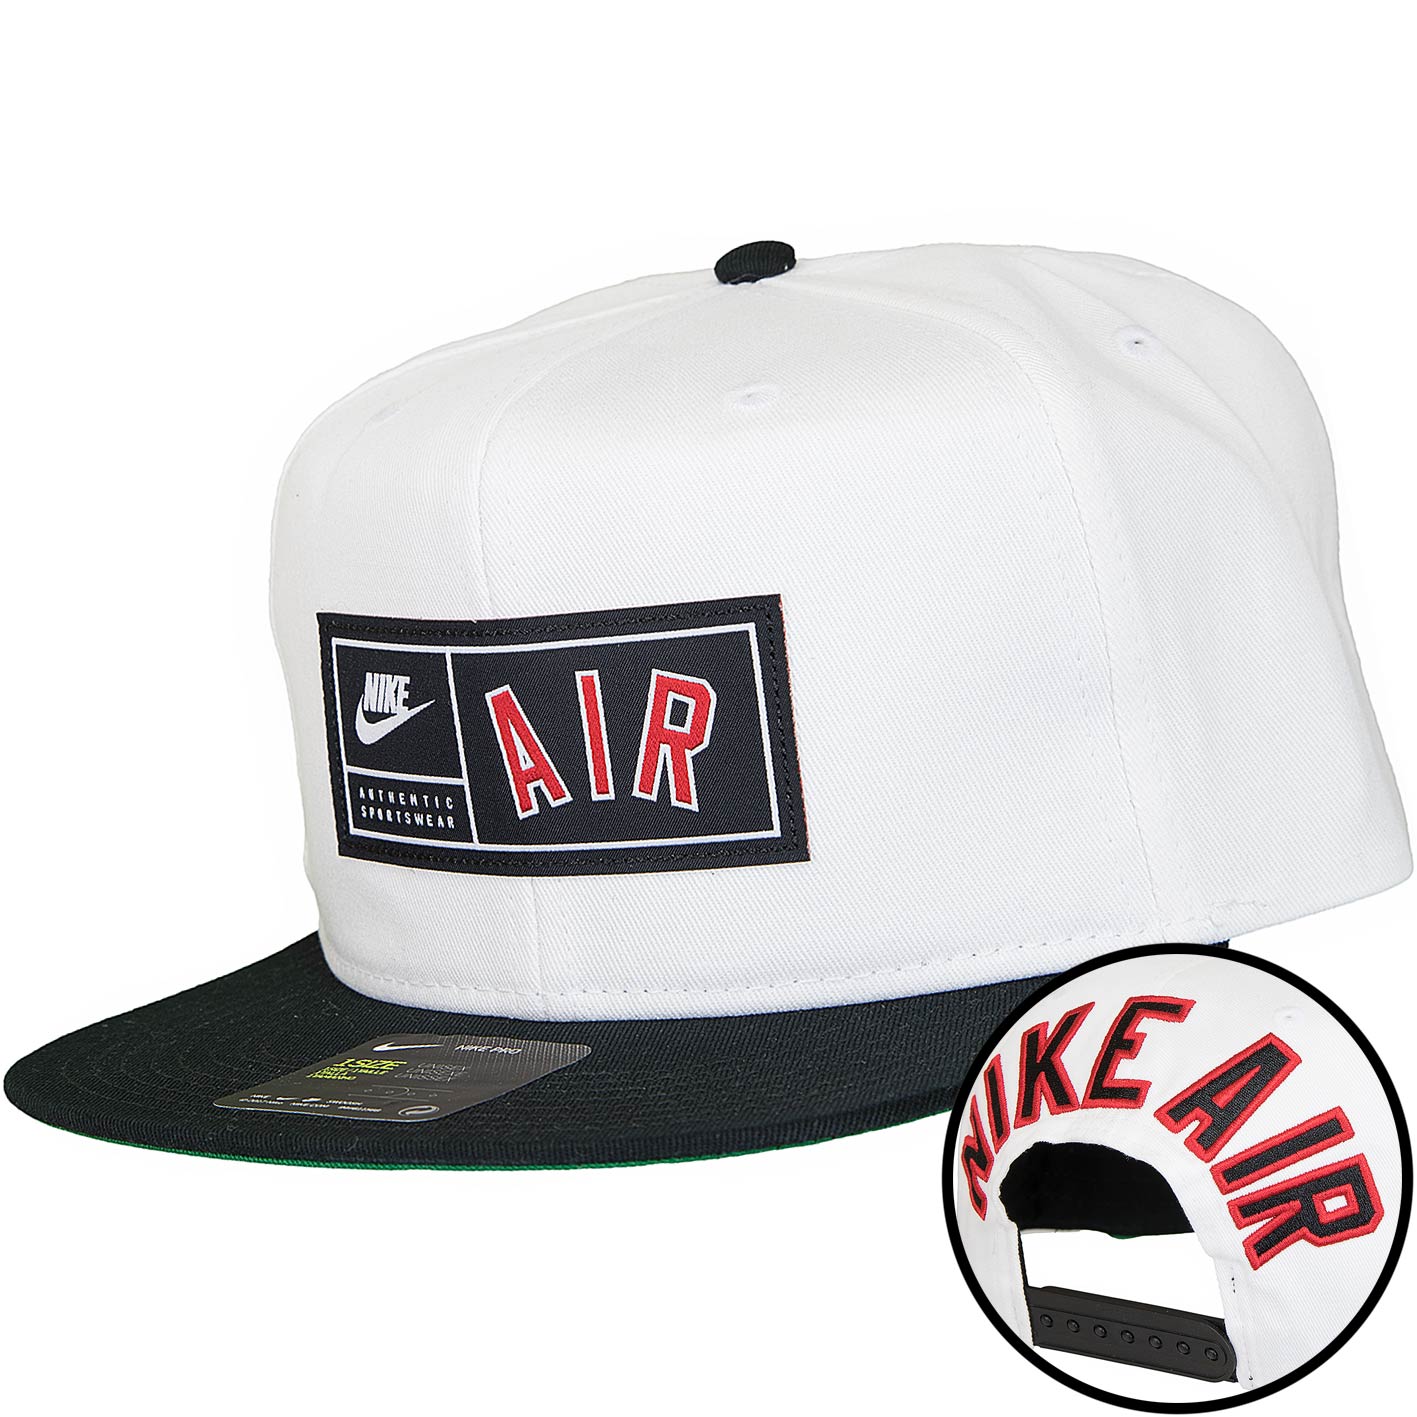 ☆ Nike Snapback Cap Air Pro weiß/schwarz - hier bestellen!